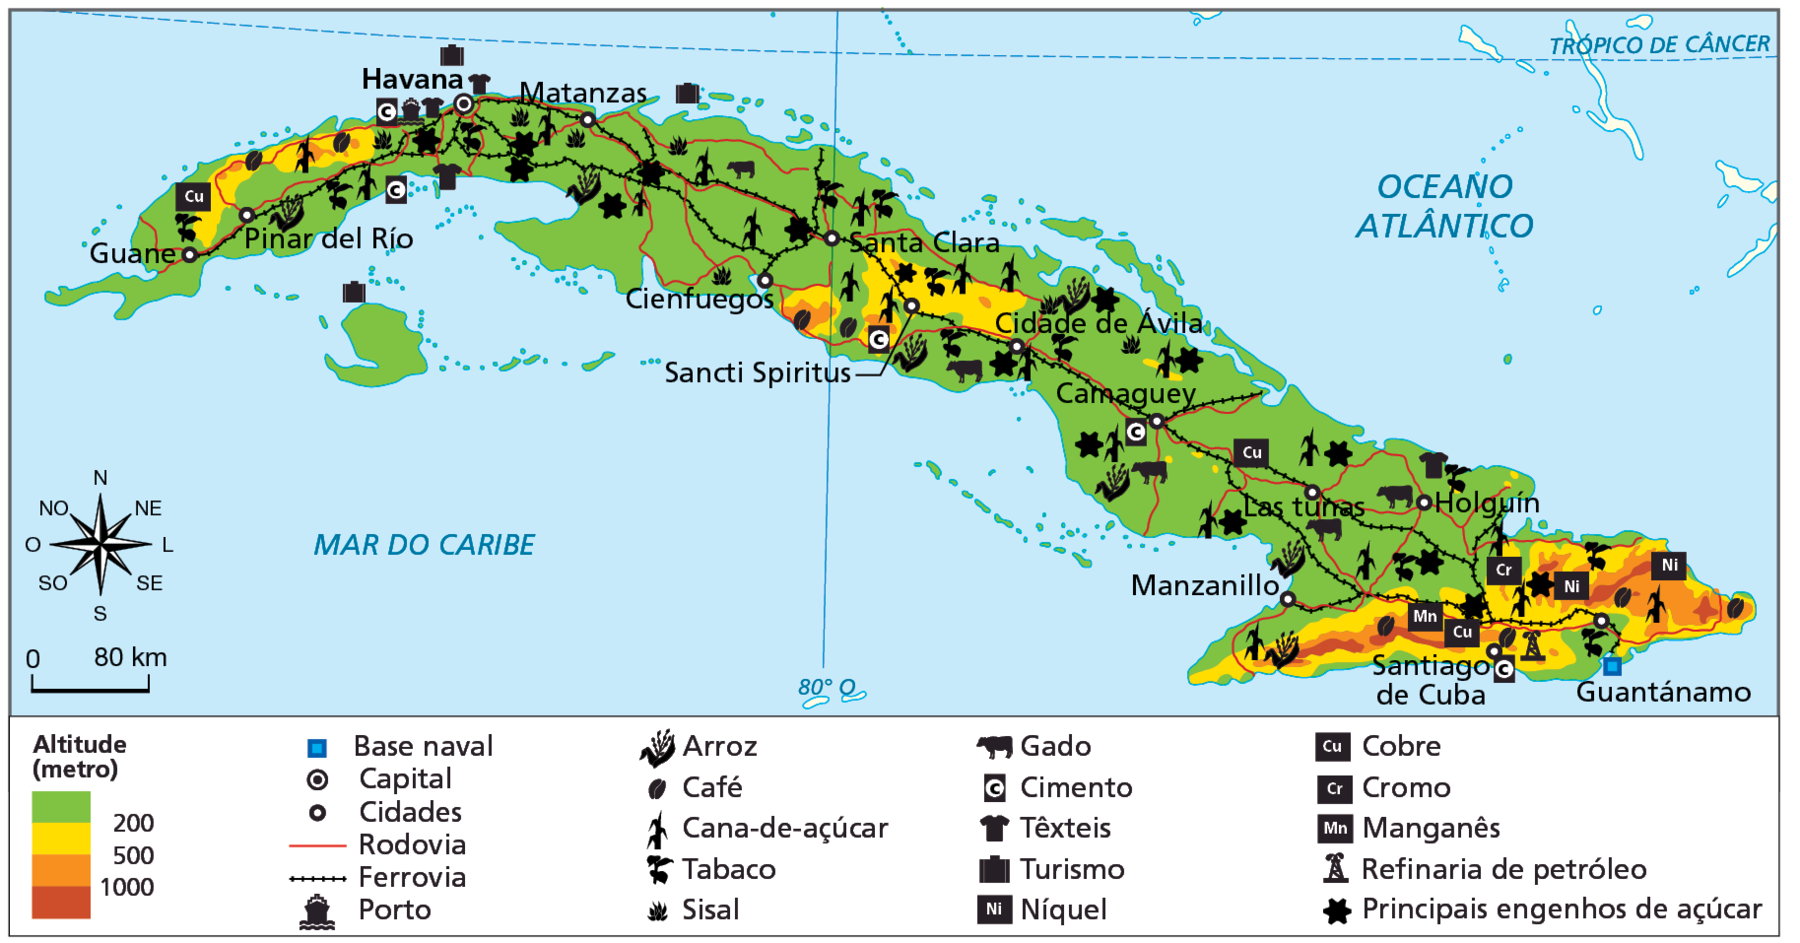 Mapa. Cuba: economia e transportes.  Mapa de Cuba representando atividades econômicas no país, altitudes, e infraestrutura (base naval, rodovias, ferrovias e portos). Altitude (metros):  As áreas com altitude na faixa dos 500 metros estão no extremo sudeste da ilha, próximo a Santiago de Cuba. Na porção central da ilha há uma pequena área com cerca de 500 metros e outras na faixa dos 200 metros.  As demais áreas do território possuem altitudes abaixo de 200 metros. Base naval: Guantánamo, no extremo sudeste.  Capital: Havana, localizada no noroeste do país.  Cidades: Guantánamo e Santiago de Cuba no extremo sudeste. Holguín, Las tunas e Manzanillo, no sudeste, Camaguey, Cidade de Ávila, Santa Clara, Sancti Spiritus e Cienfuegos na porção central do país. Matanzas, Pinar del Río e Guane, na porção oeste do país.  Rodovia: de norte ao sul e leste a oeste, conectam as cidades da faixa central da ilha e as fachadas litorâneas do território.  Ferrovia: atravessa o país do extremo oeste ao extremo leste, conectando Guane, a capital Havana e Guantánamo, no extremo leste. Porto: Havana.  Arroz: atividade presente em todo o território de forma espalhada.   Café: nas áreas de altitudes mais elevadas.   Cana-de-açúcar: atividade praticada em todo o território, de leste a oeste.   Tabaco: sul, centro-leste e norte.  Sisal: área ao centro, no oeste e na porção leste.   Gado: predomínio nas porções oeste e central. Cimento: áreas nas porções central, oeste e sudeste.   Têxteis: próxima a Havana, na porção oeste, e à cidade de Holguín, no leste.  Turismo: predomínio na porção oeste do litoral norte e em uma ilha ao sul de Cuba, no mar do Caribe.  Níquel: na porção sudeste.  Cobre: na porção sudeste, leste e no extremo da porção oeste.  Cromo: a sudeste.  Manganês: a sudeste.  Refinaria de petróleo: a sudeste.  Principais engenhos de açúcar: em todo o território, de leste a oeste. À esquerda, rosa dos ventos e escala de 0 a 80 quilômetros.